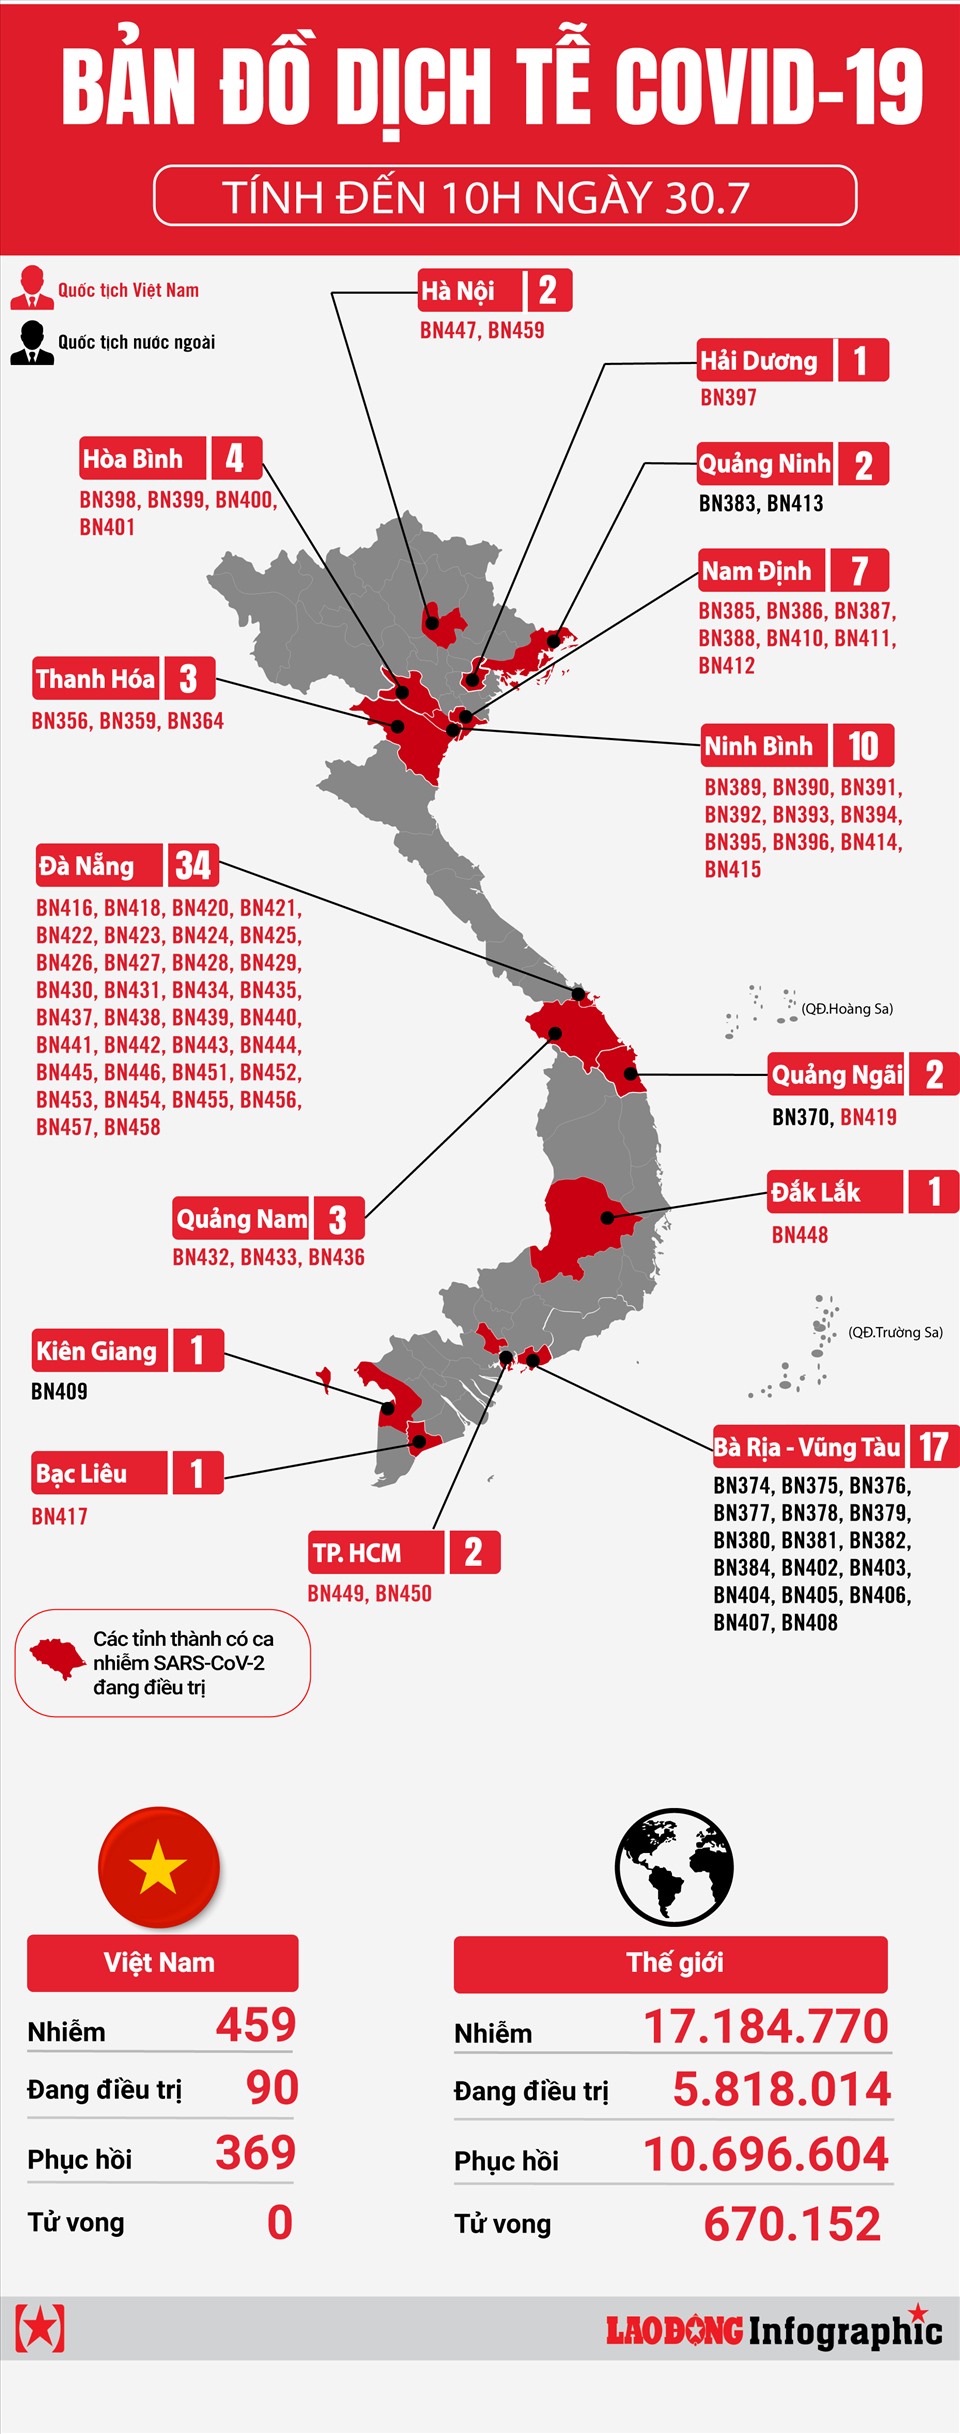 Bản đồ dịch tễ Covid-19 Việt Nam 2024 Hải Dương cho thấy tình hình dịch bệnh tại toàn quốc và nhất là tại địa phương Hải Dương. Với cách tiếp cận ứng phó hiệu quả, tỉnh Hải Dương đã giảm thiểu tác động của dịch đến tối thiểu. Điều này làm tăng hiệu quả trong phát triển kinh tế và tái lập cuộc sống bình thường.